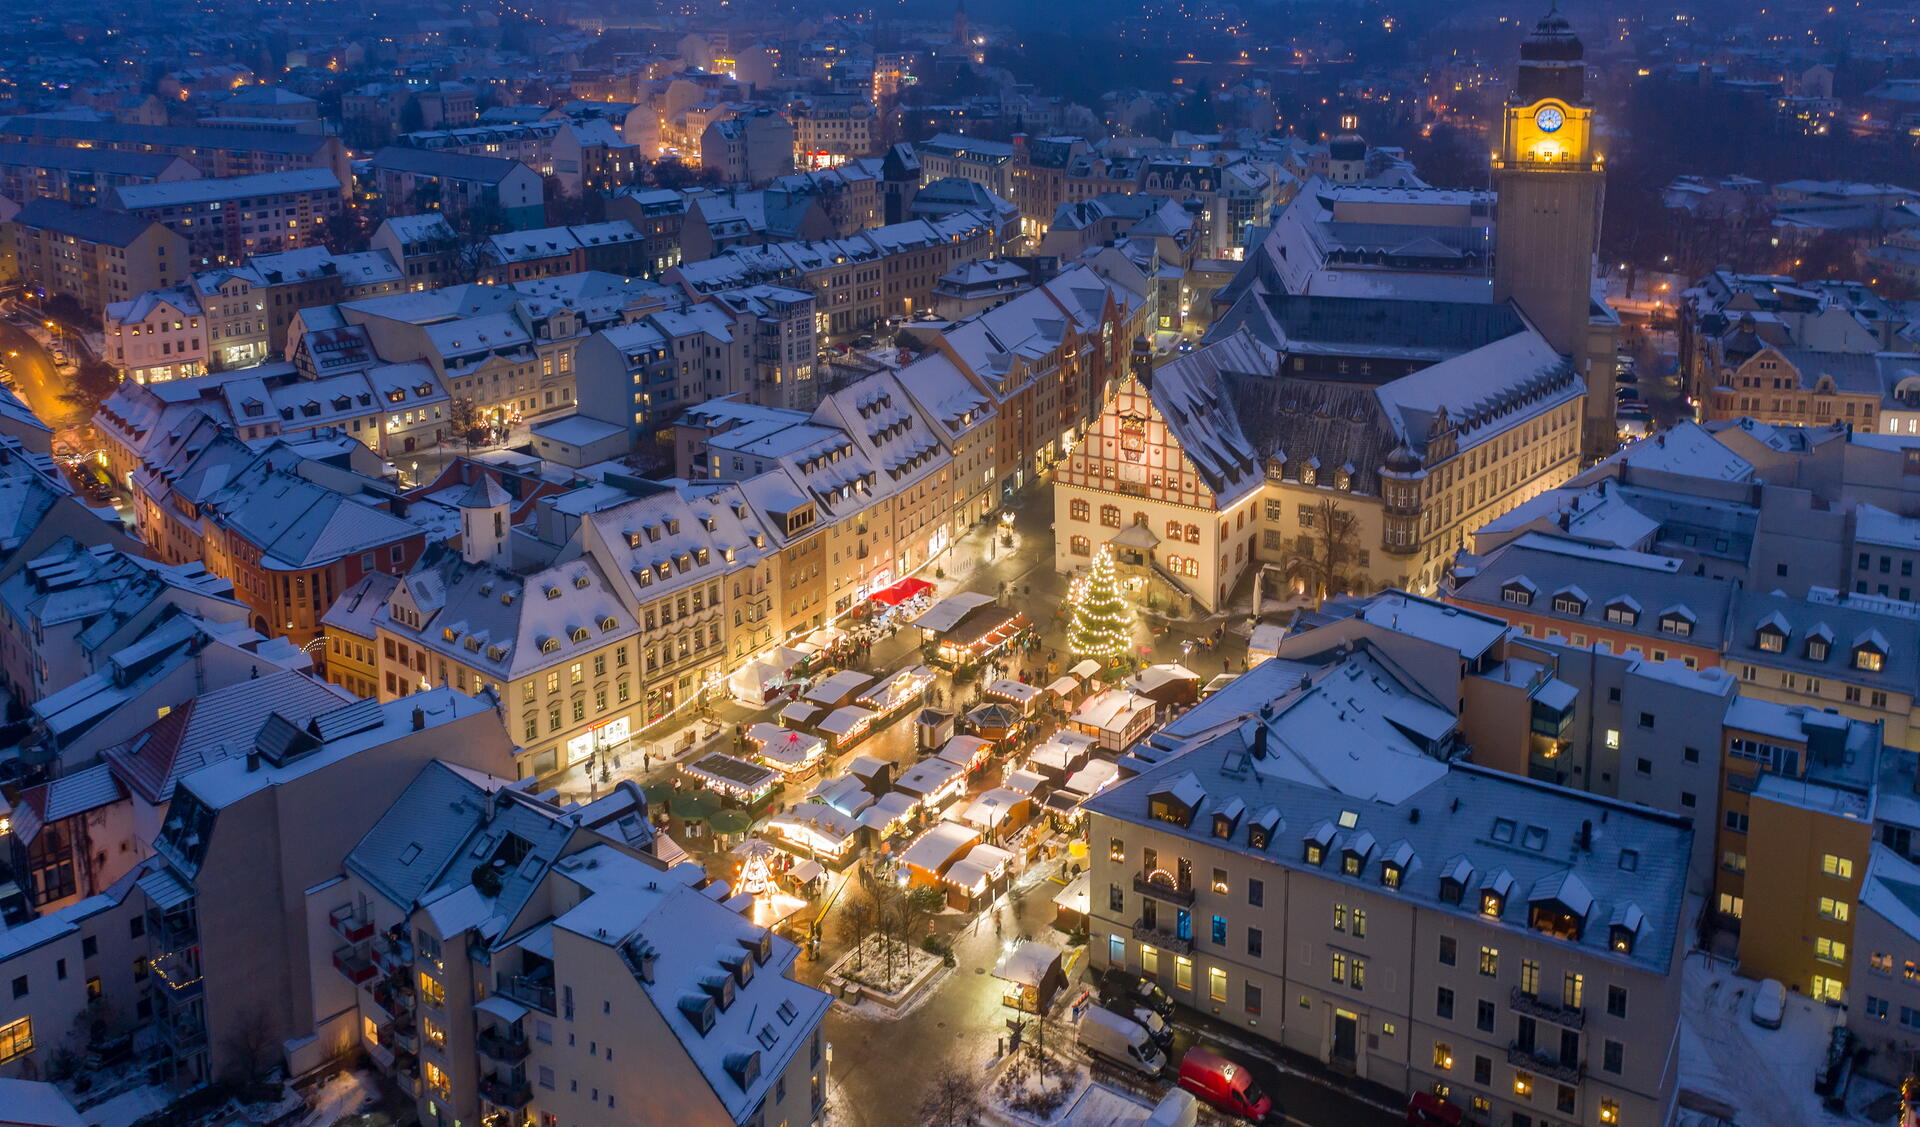 Bild vergrößern: Luftbild Weihnachtsmarkt